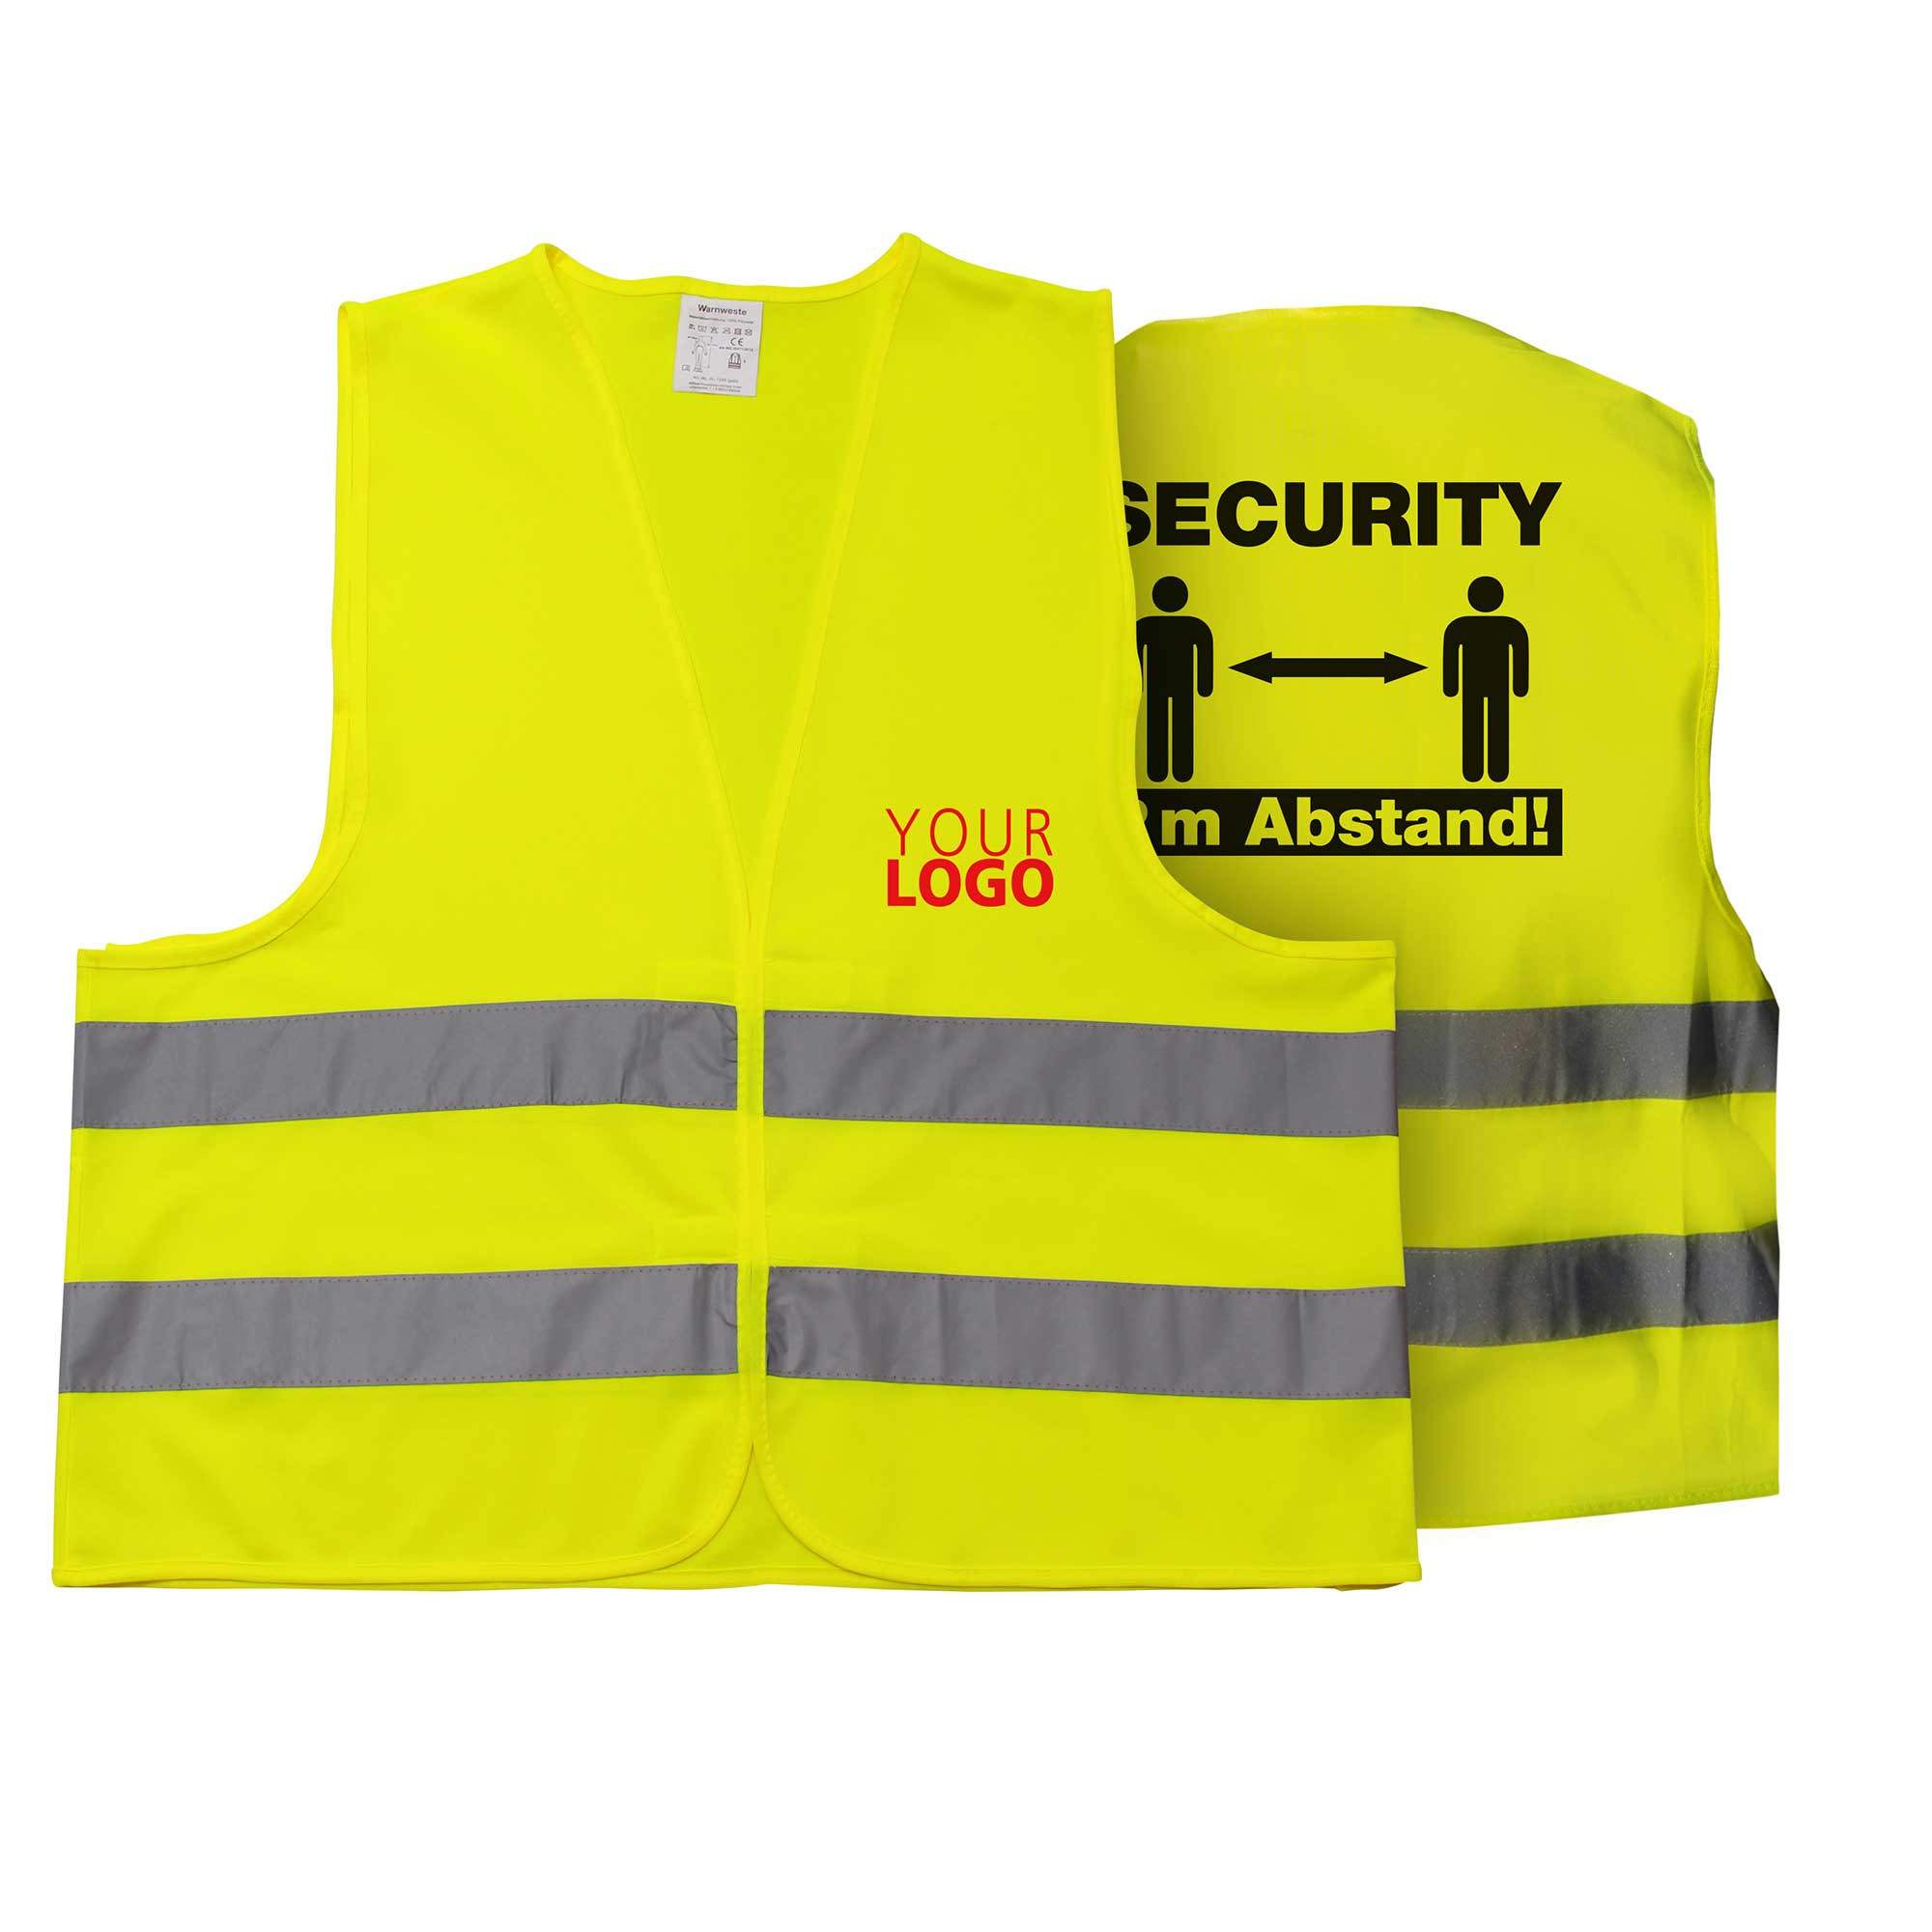 Warnweste Security 2 Meter Abstand - eigenes Logo vorne